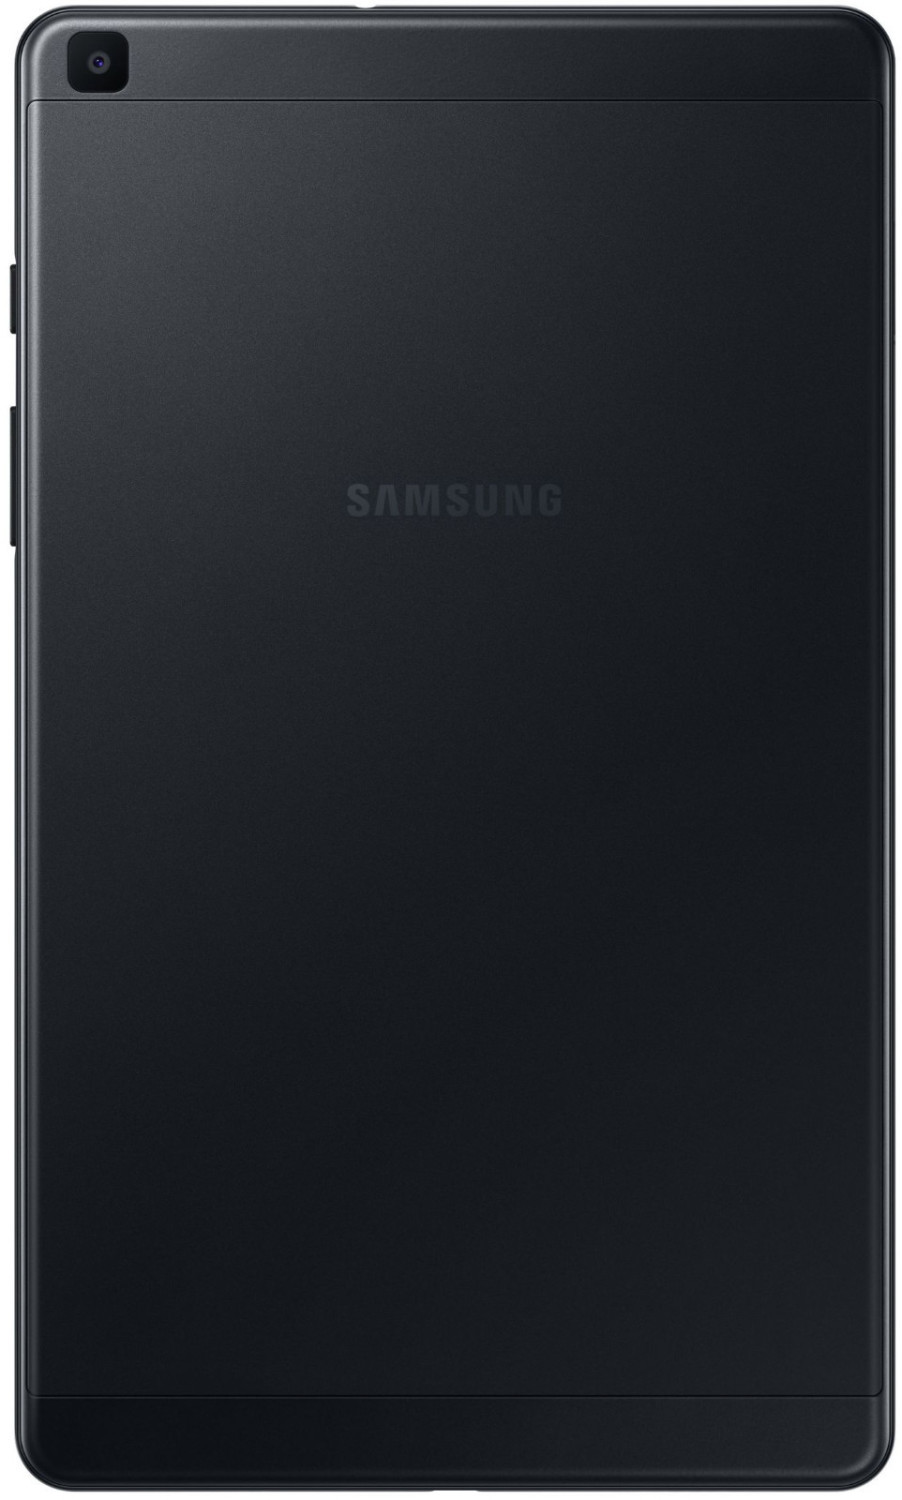 Soldes Samsung Tab S 32 Go - Nos bonnes affaires de janvier